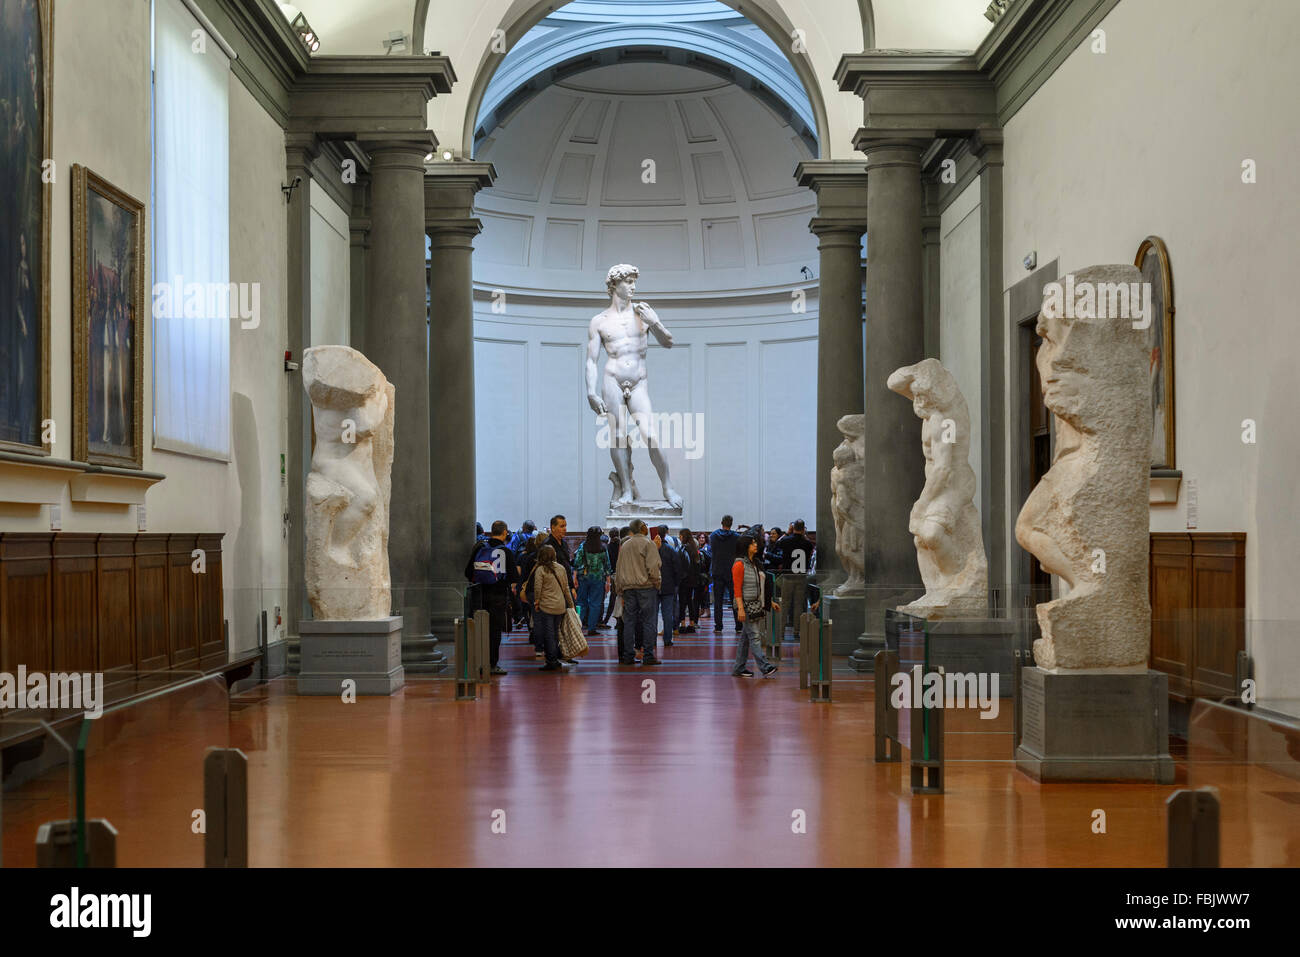 Florence. L'Italie. Les touristes visiter la statue de David de Michel-Ange à la Galleria dell'Accademia. Galerie de l'académie de Florence. Banque D'Images